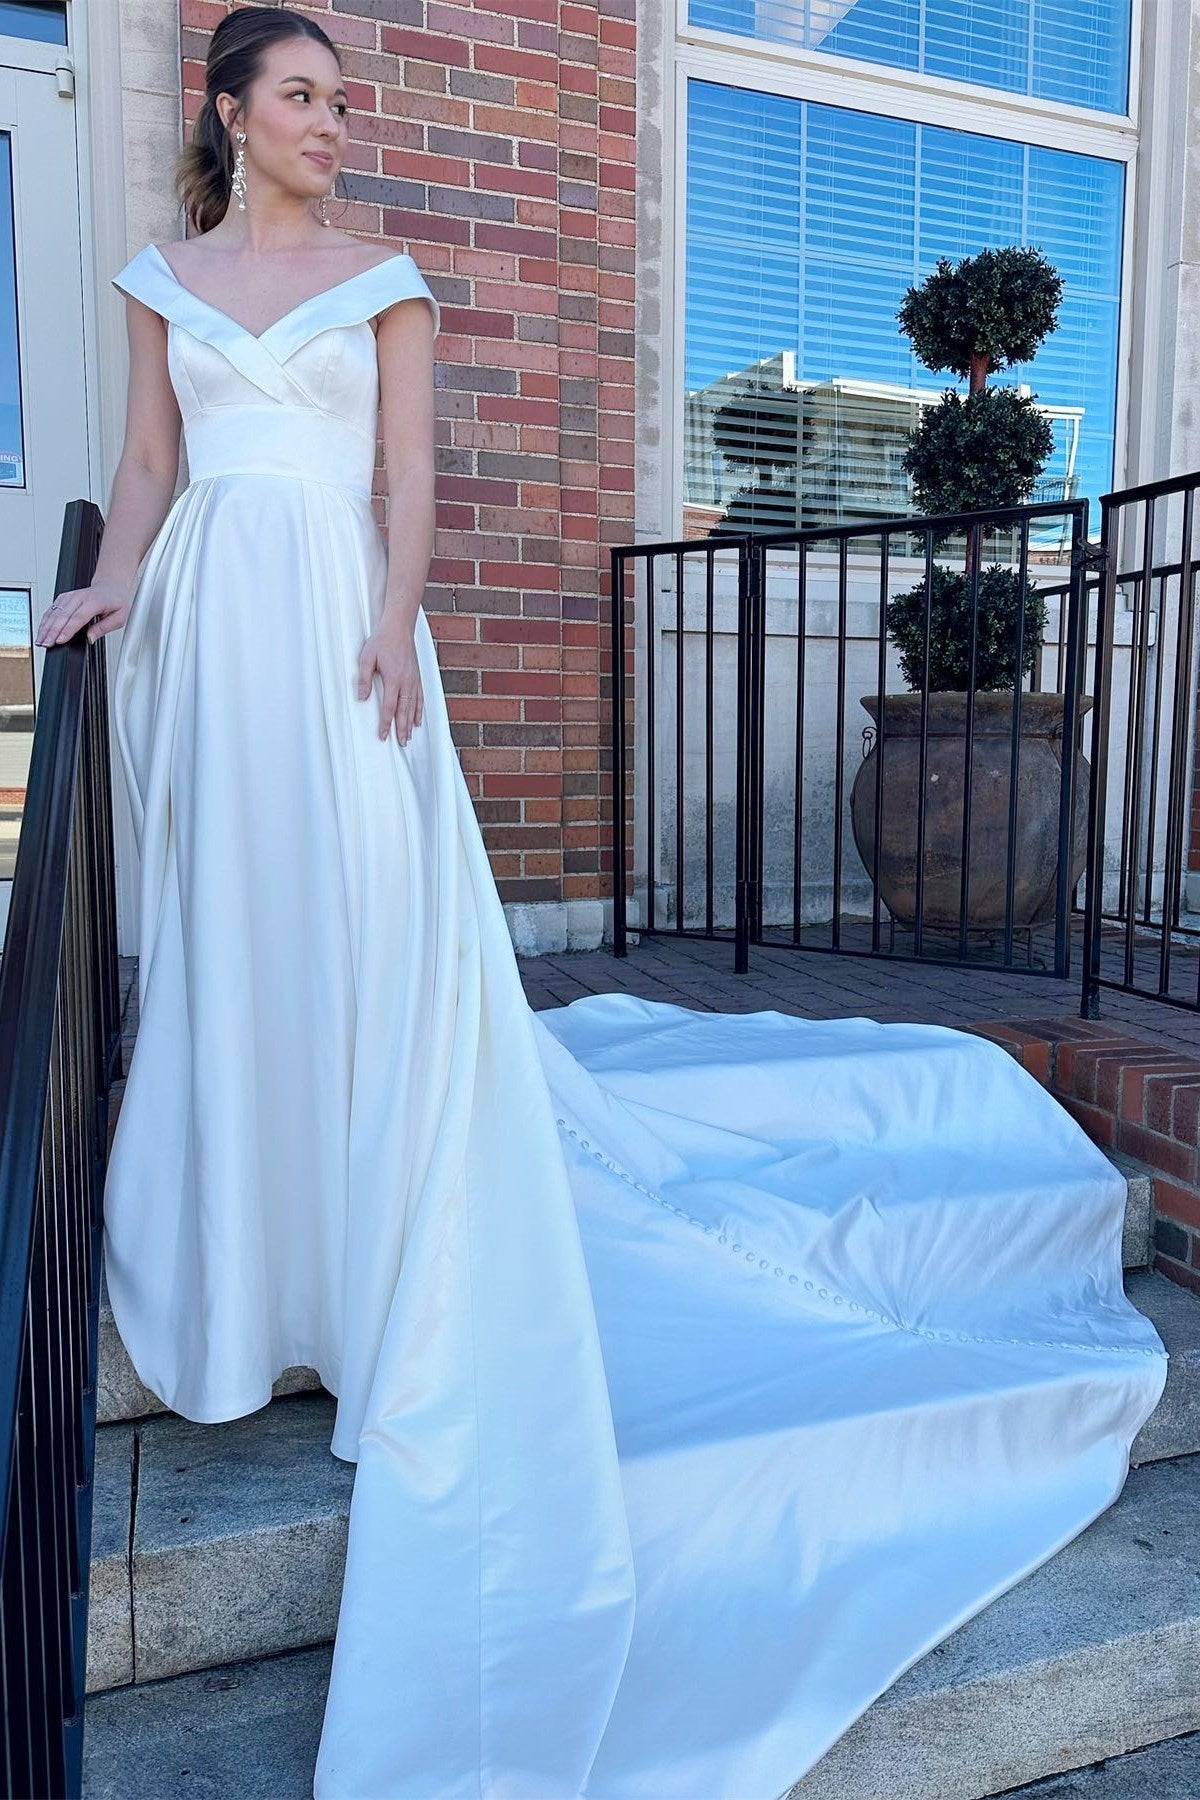 White Portrait High-Waist A-Line Long Wedding Dress